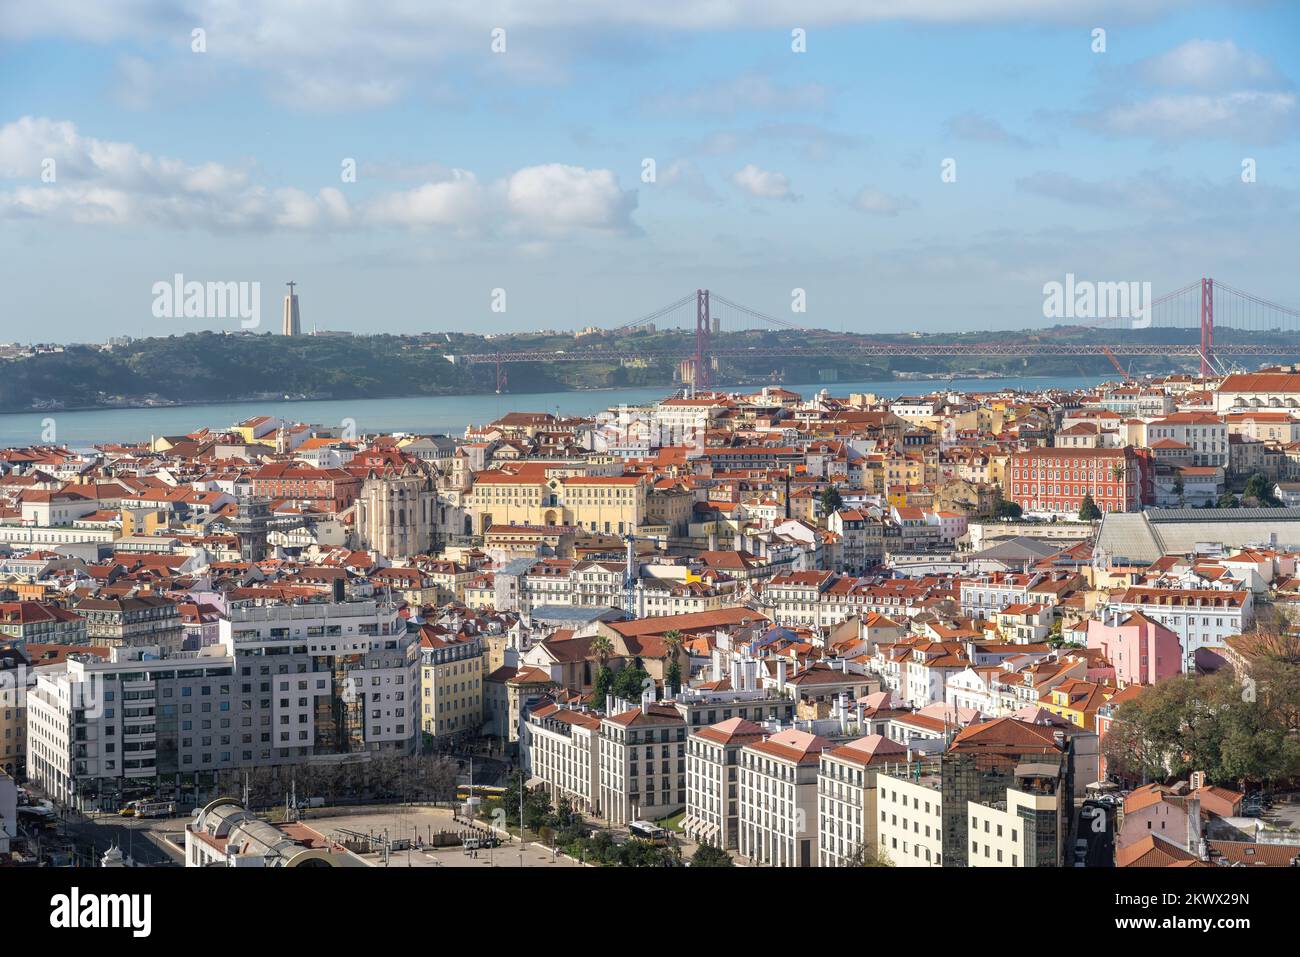 Luftaufnahme von Lissabon mit Brücke 25 de Abril und Heiligtum von Christus dem König im Hintergrund - Lissabon, Portugal Stockfoto